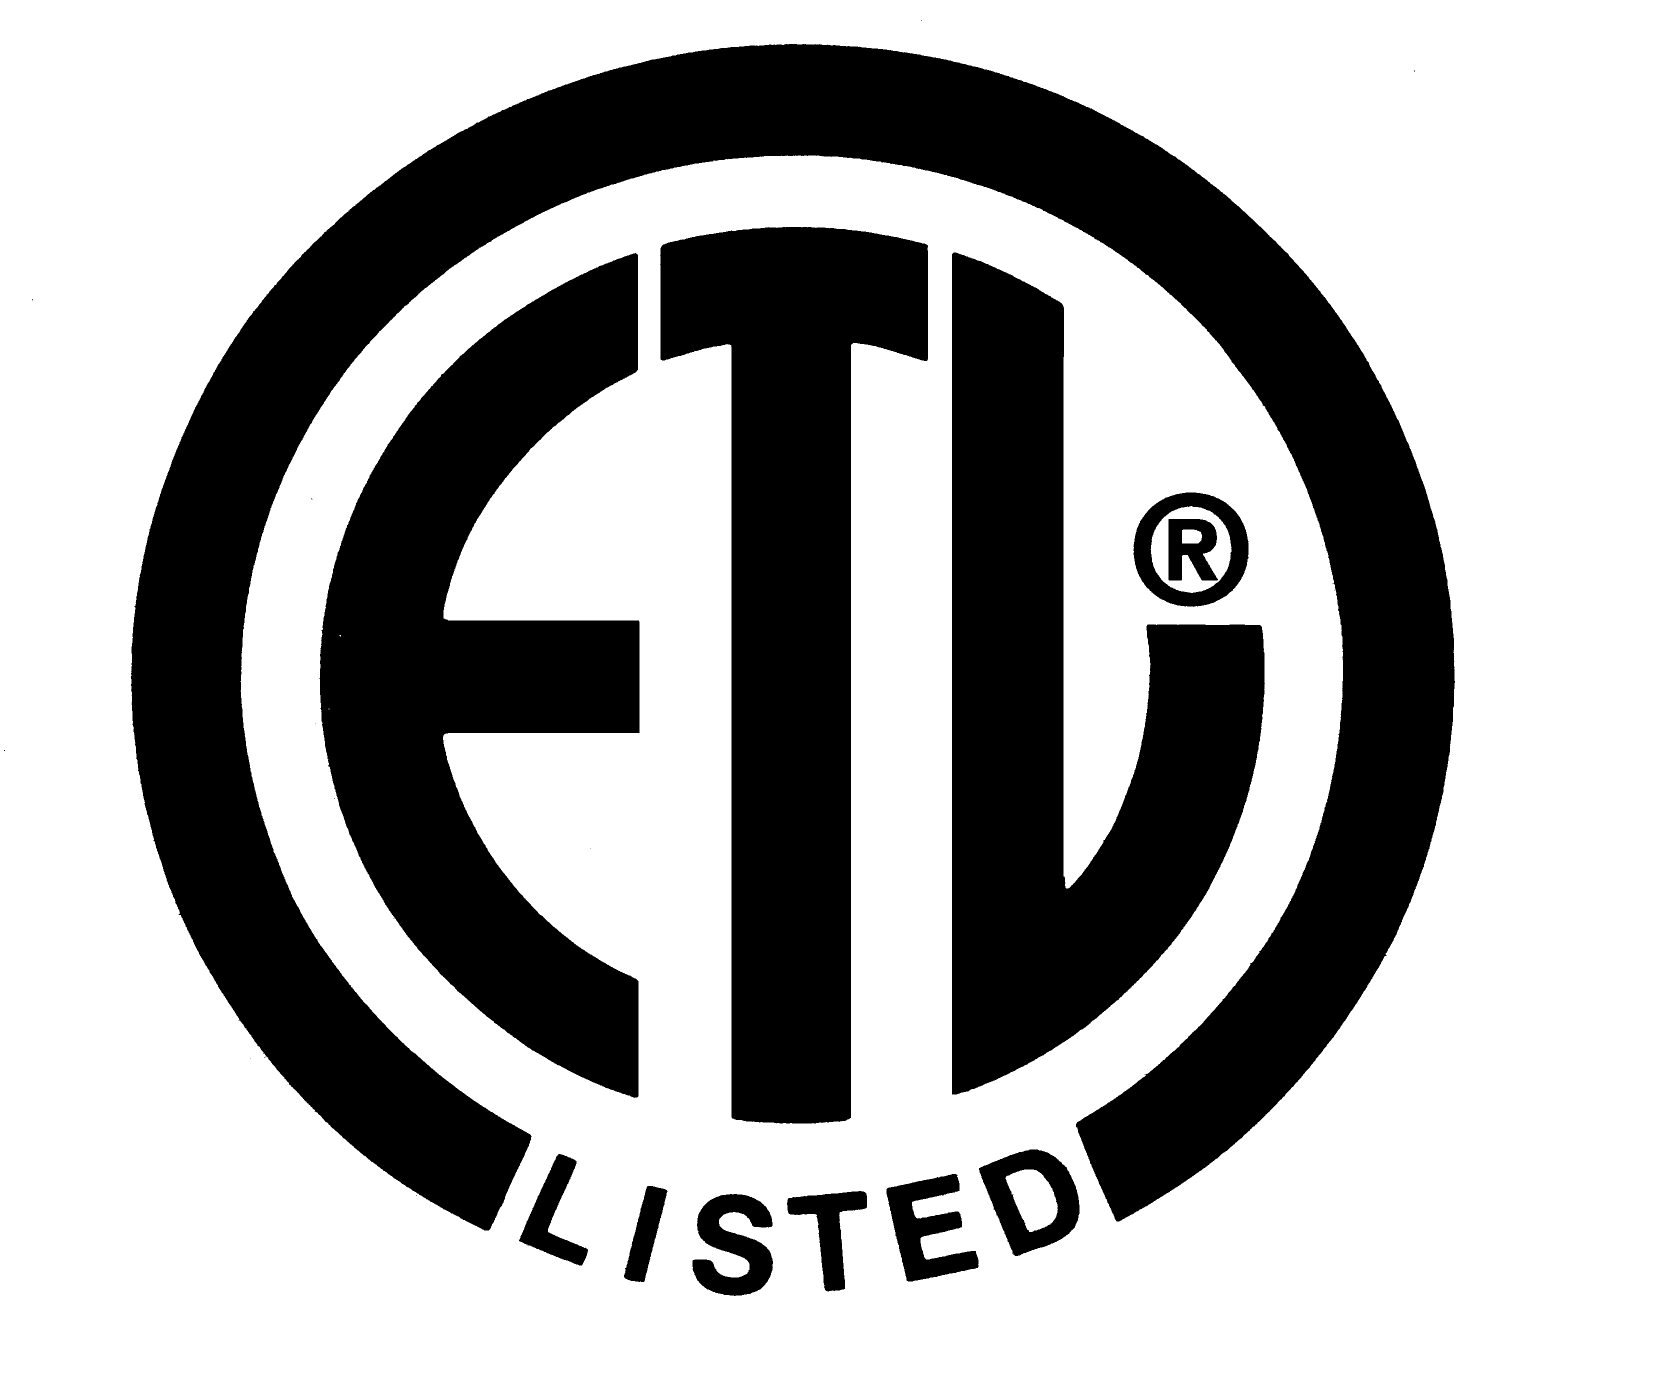 etl-logo